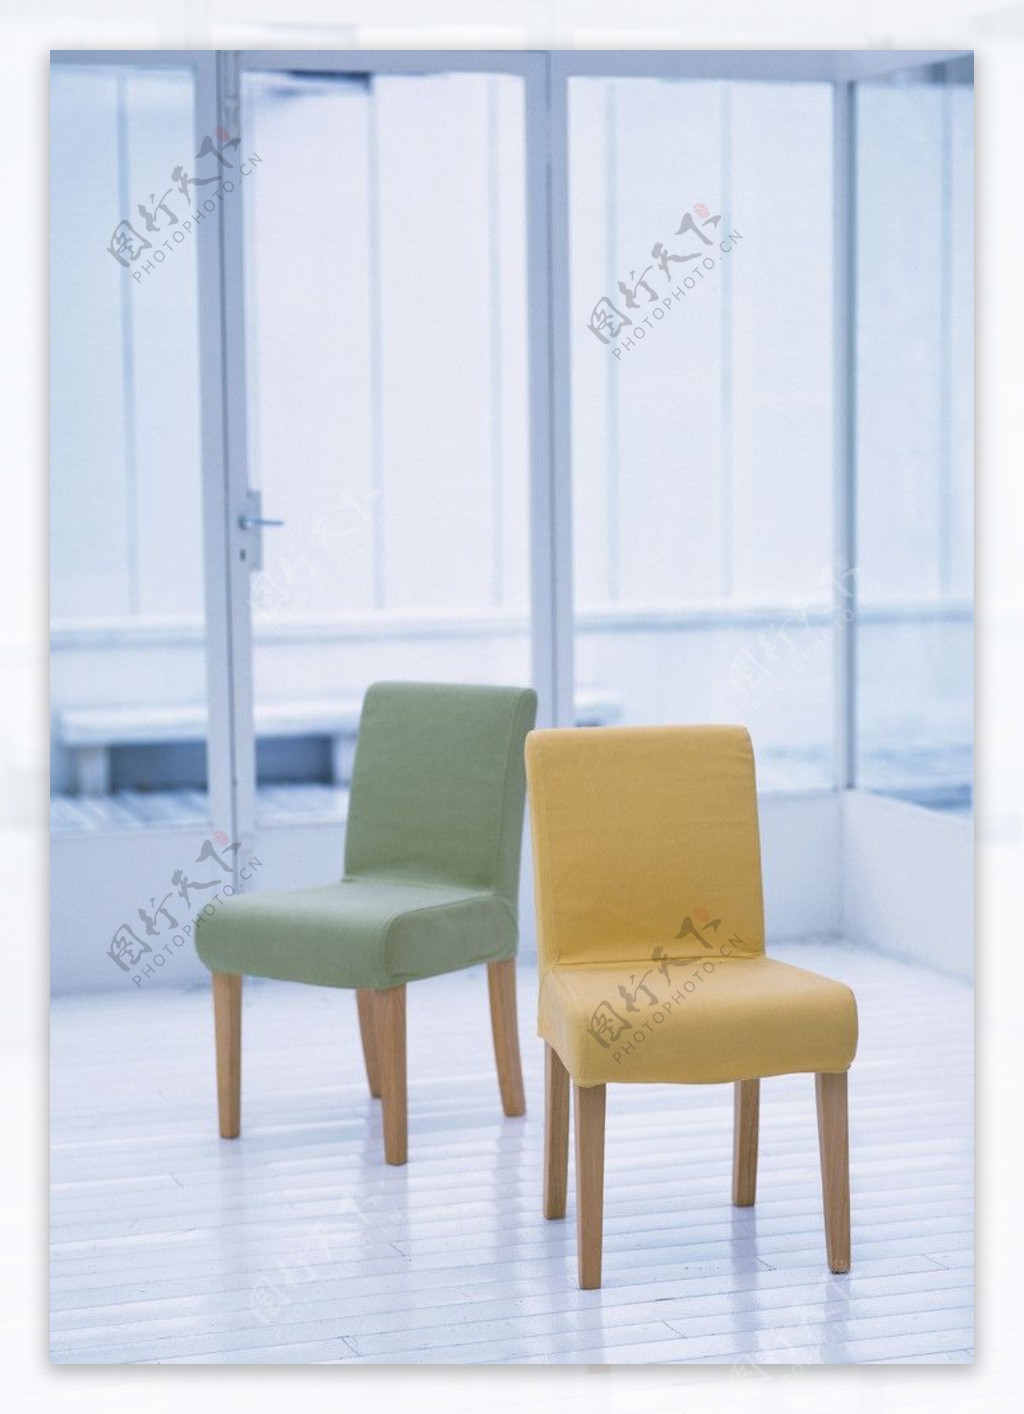 椅子摄影图图片